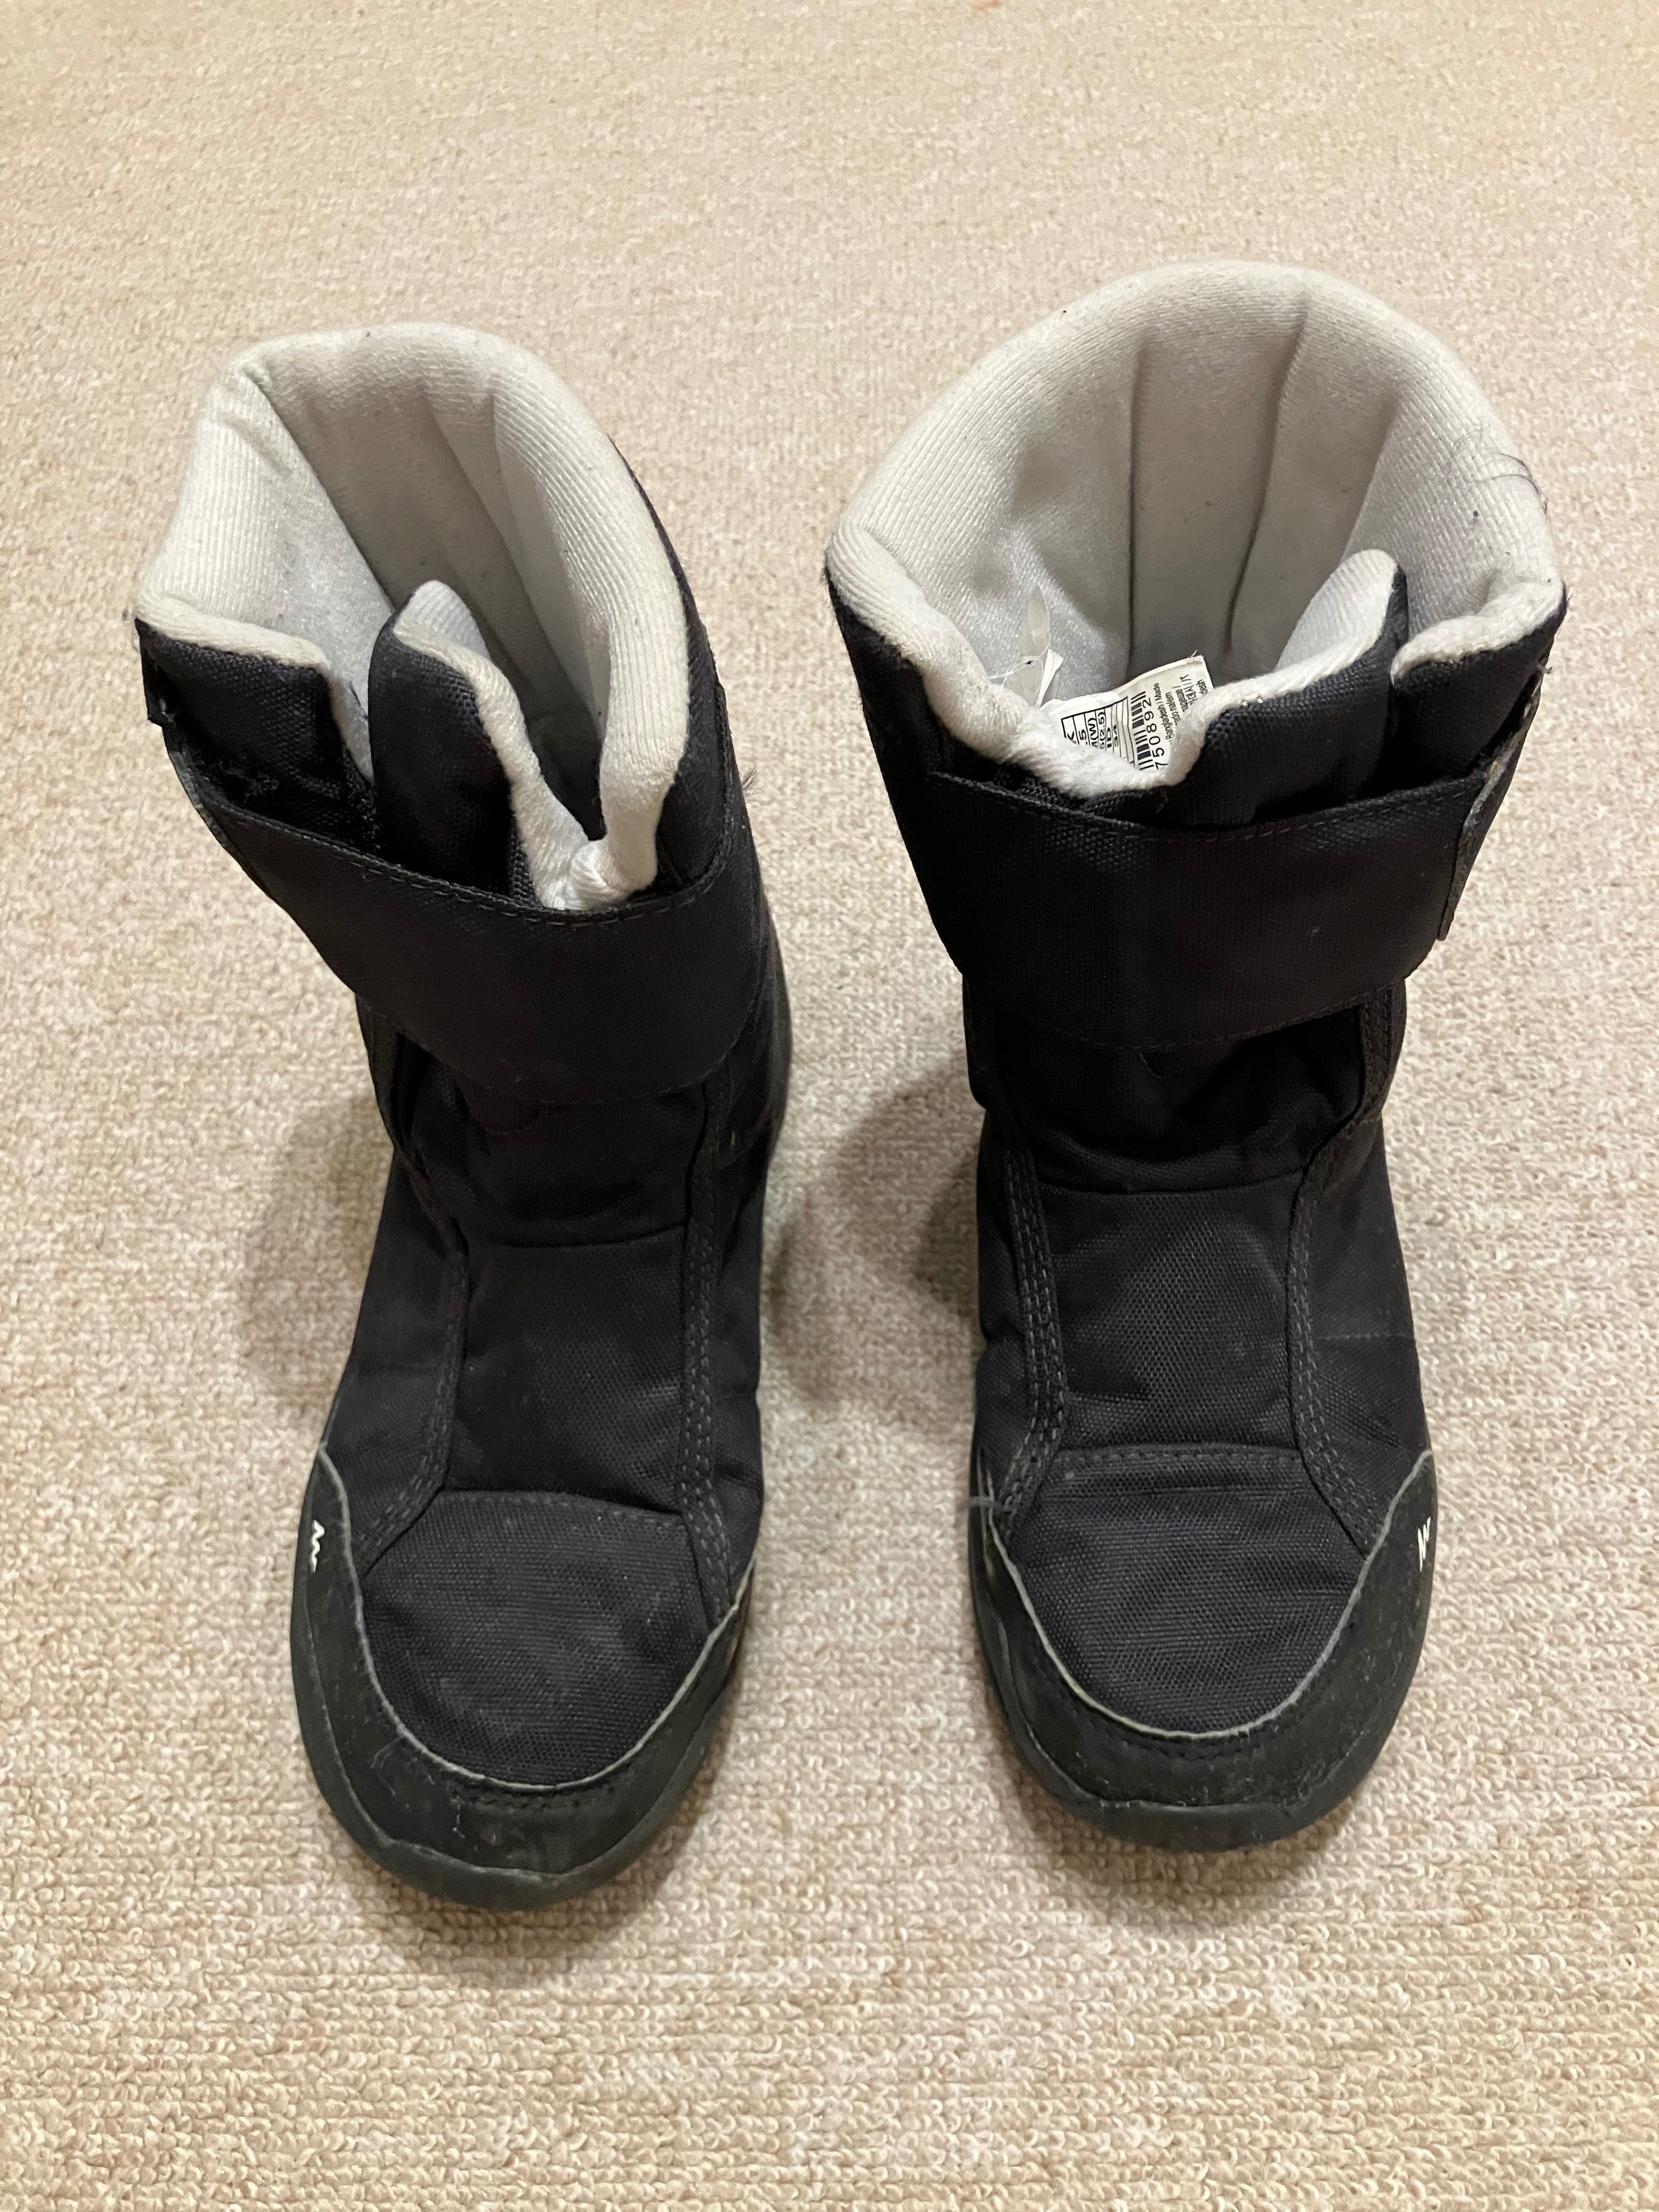 Buty chłopięce zimowe 34